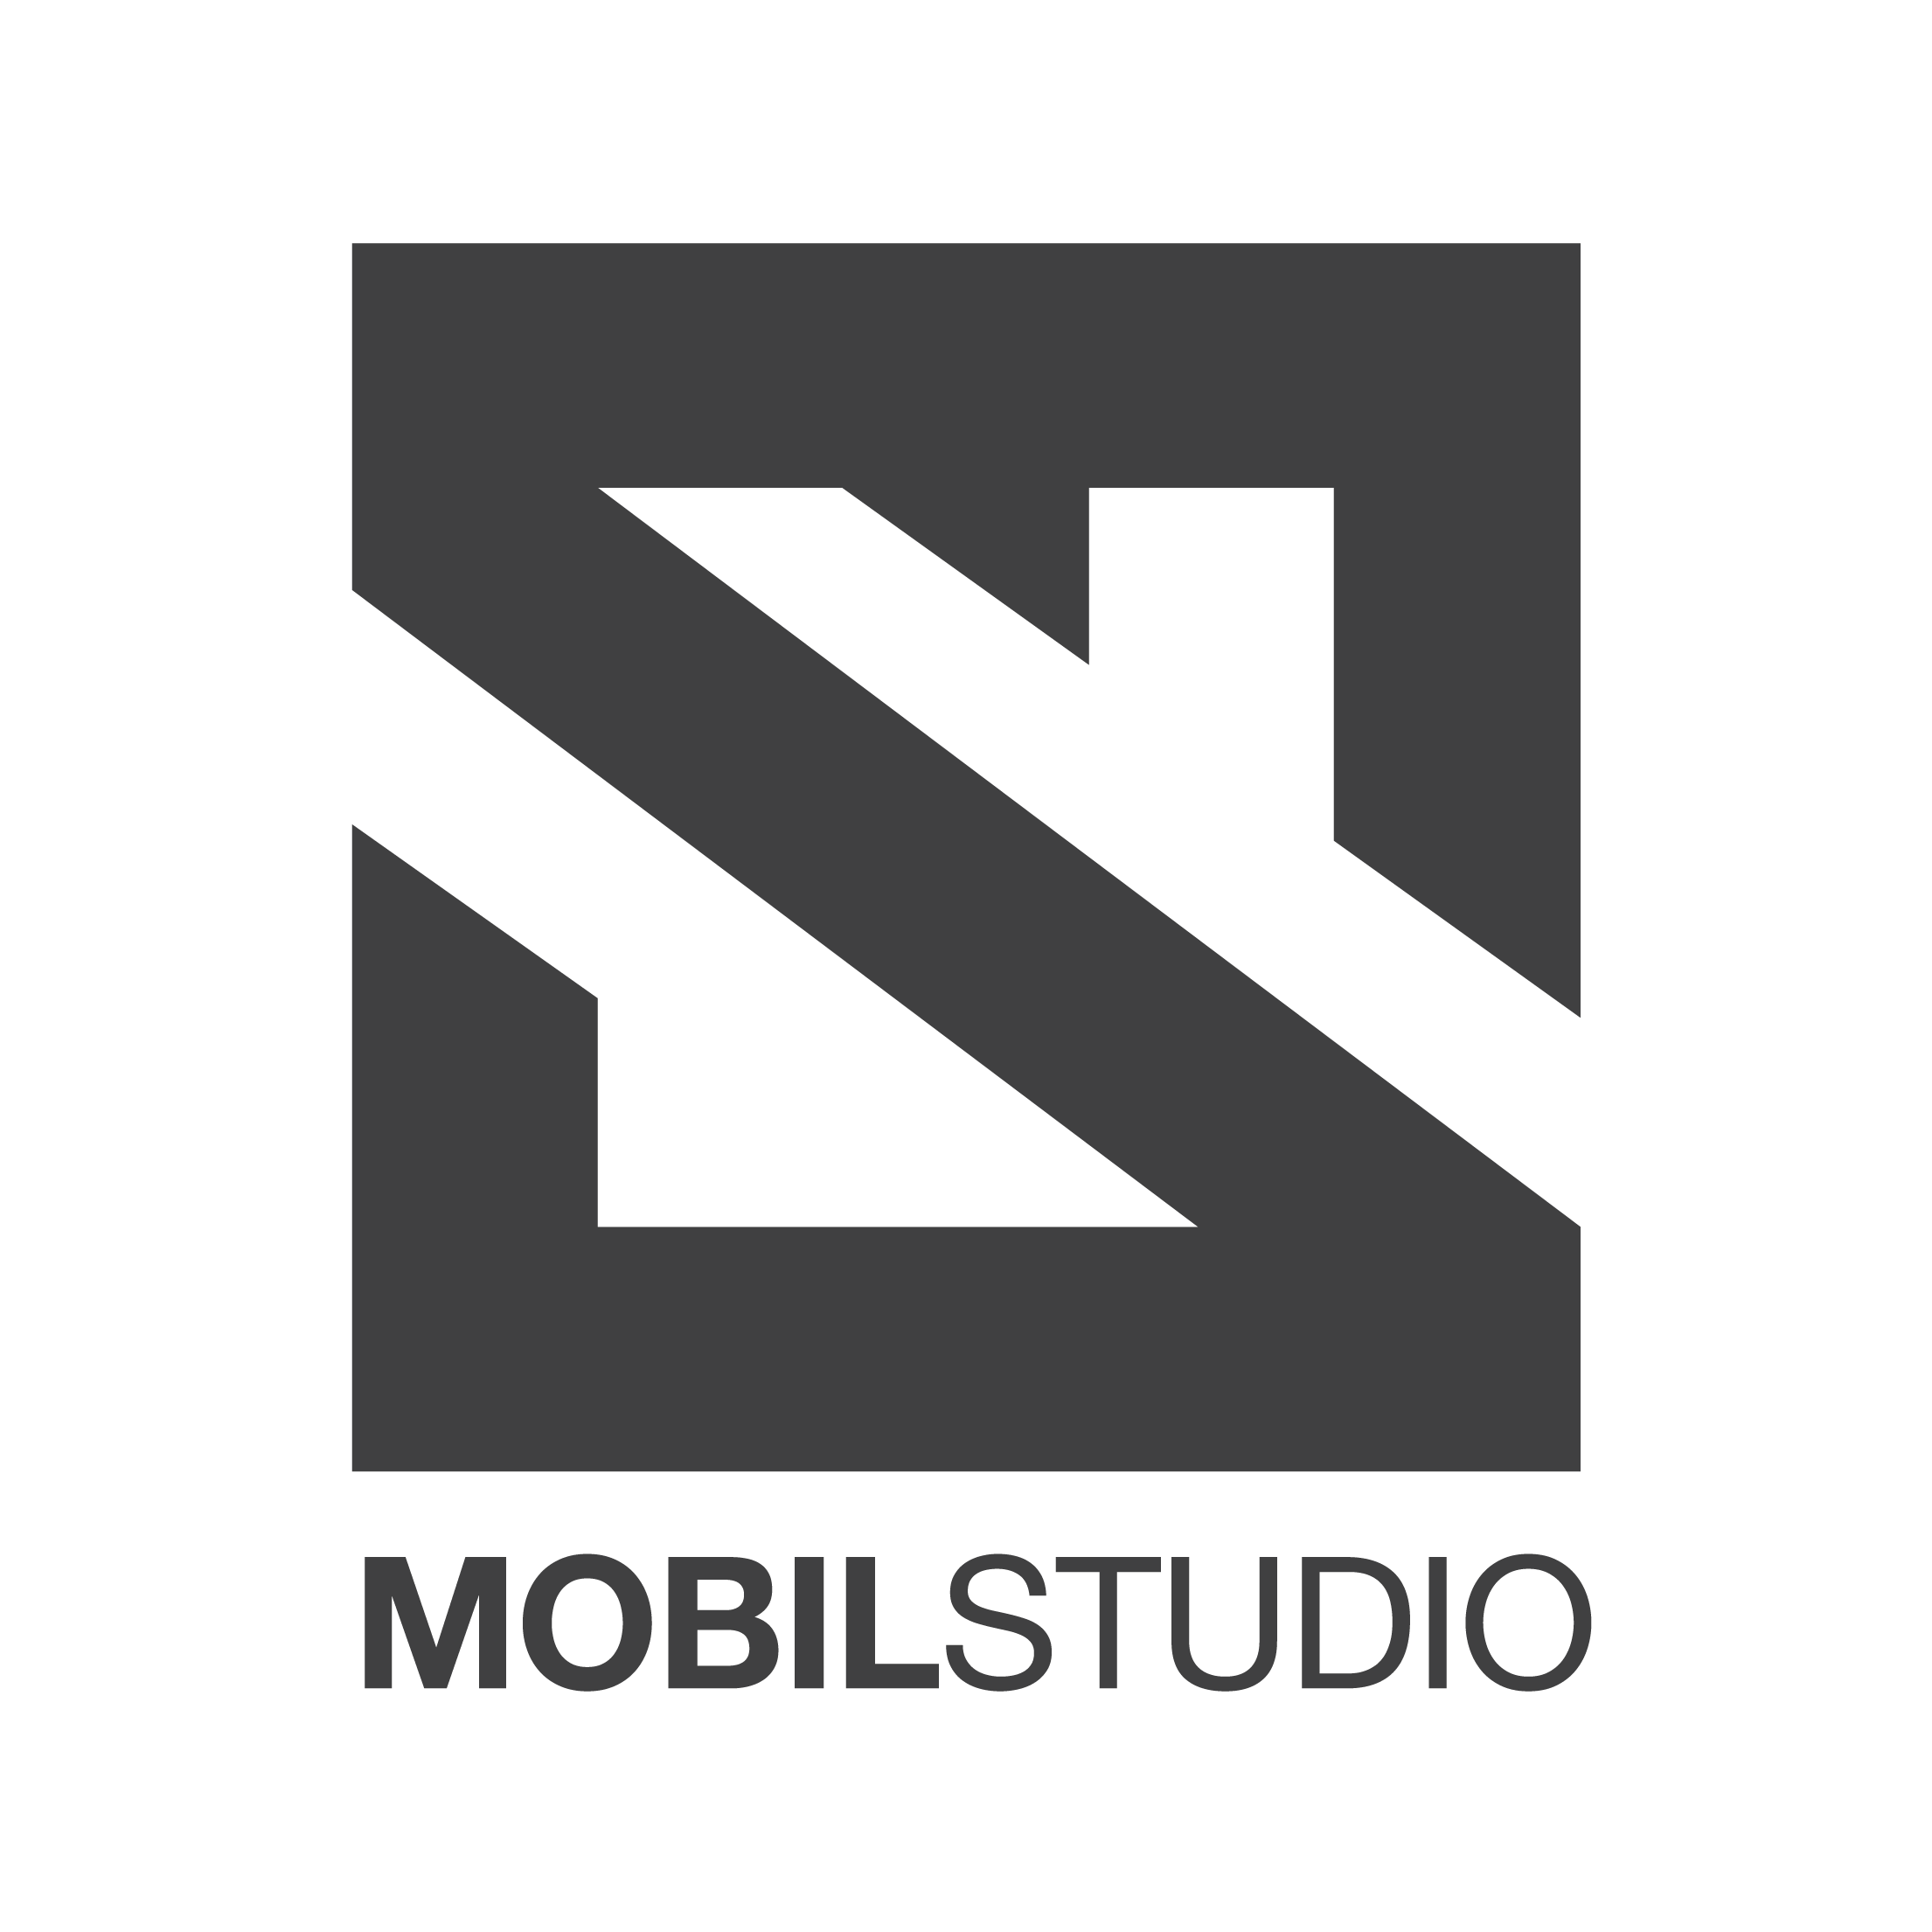 mobil studio logo